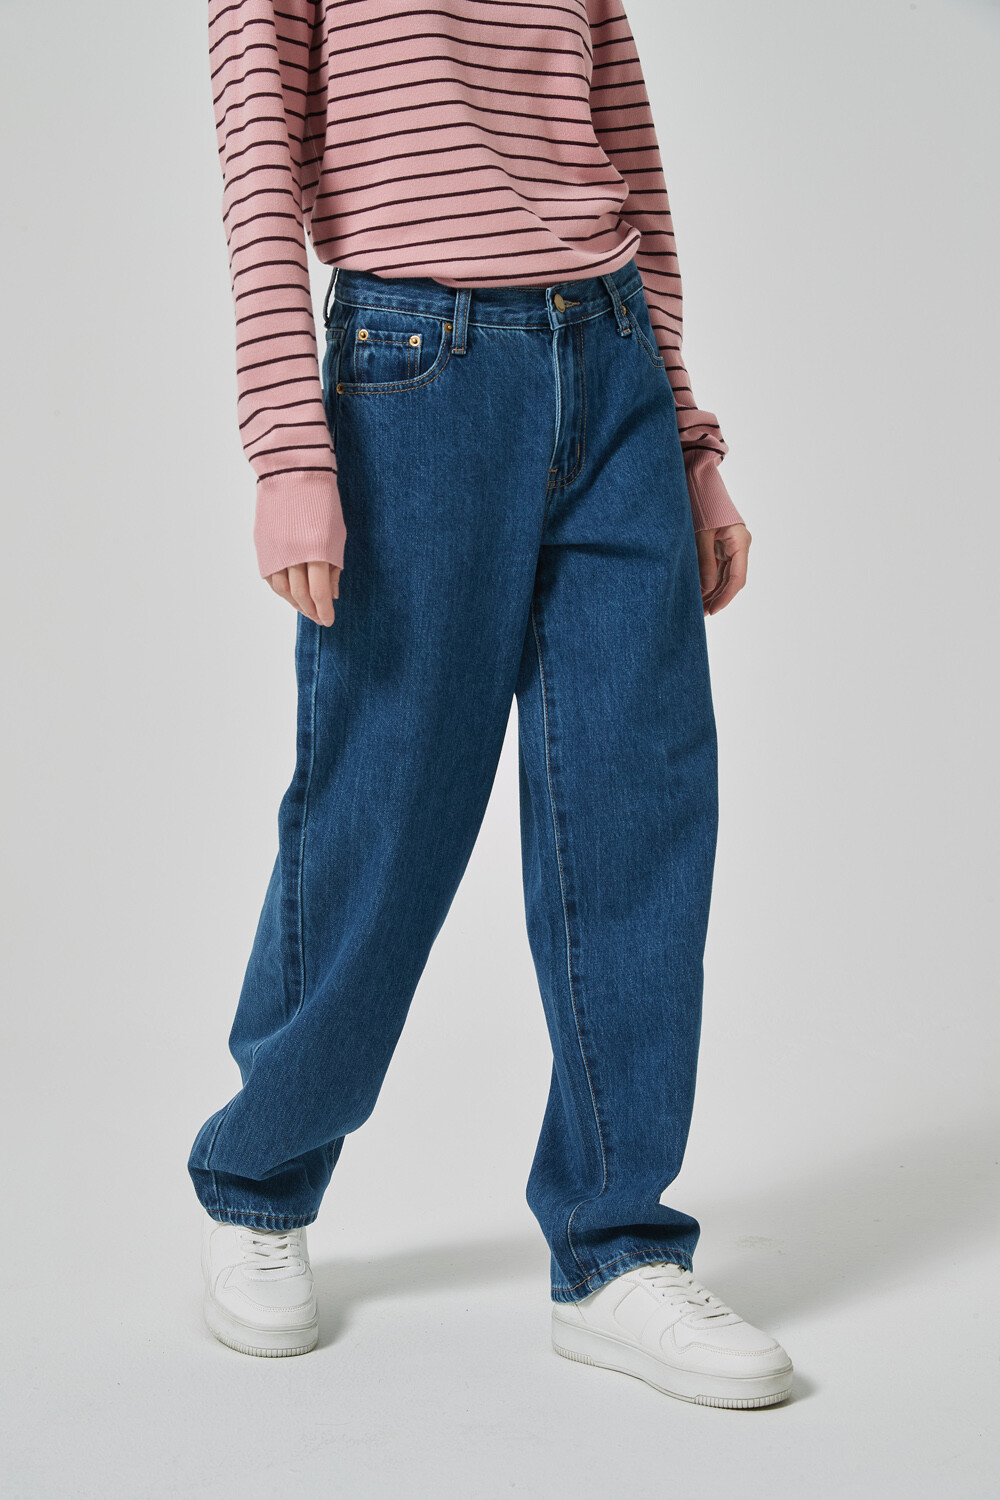 Pantalon Cotily Azul Medio